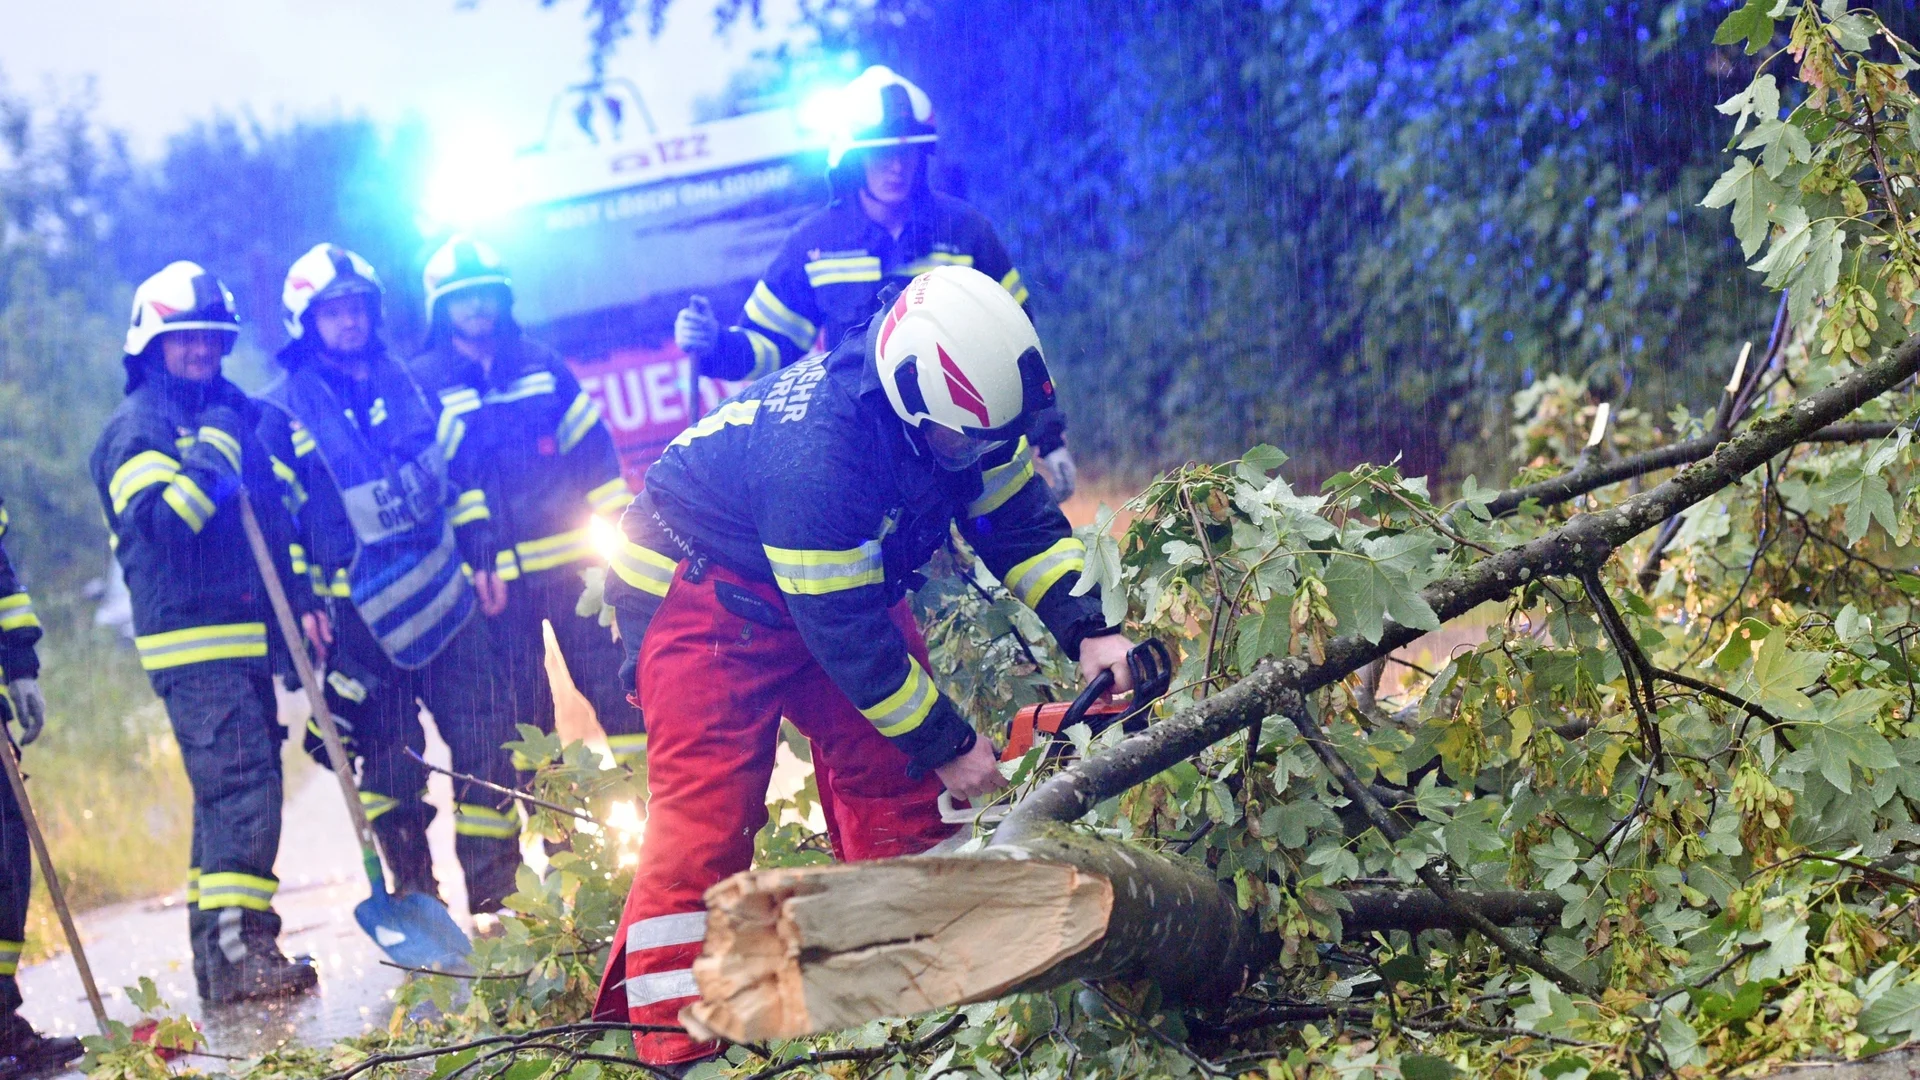 "Със скорост от 155 км/ч": Паднали дървета премазаха хора в Полша